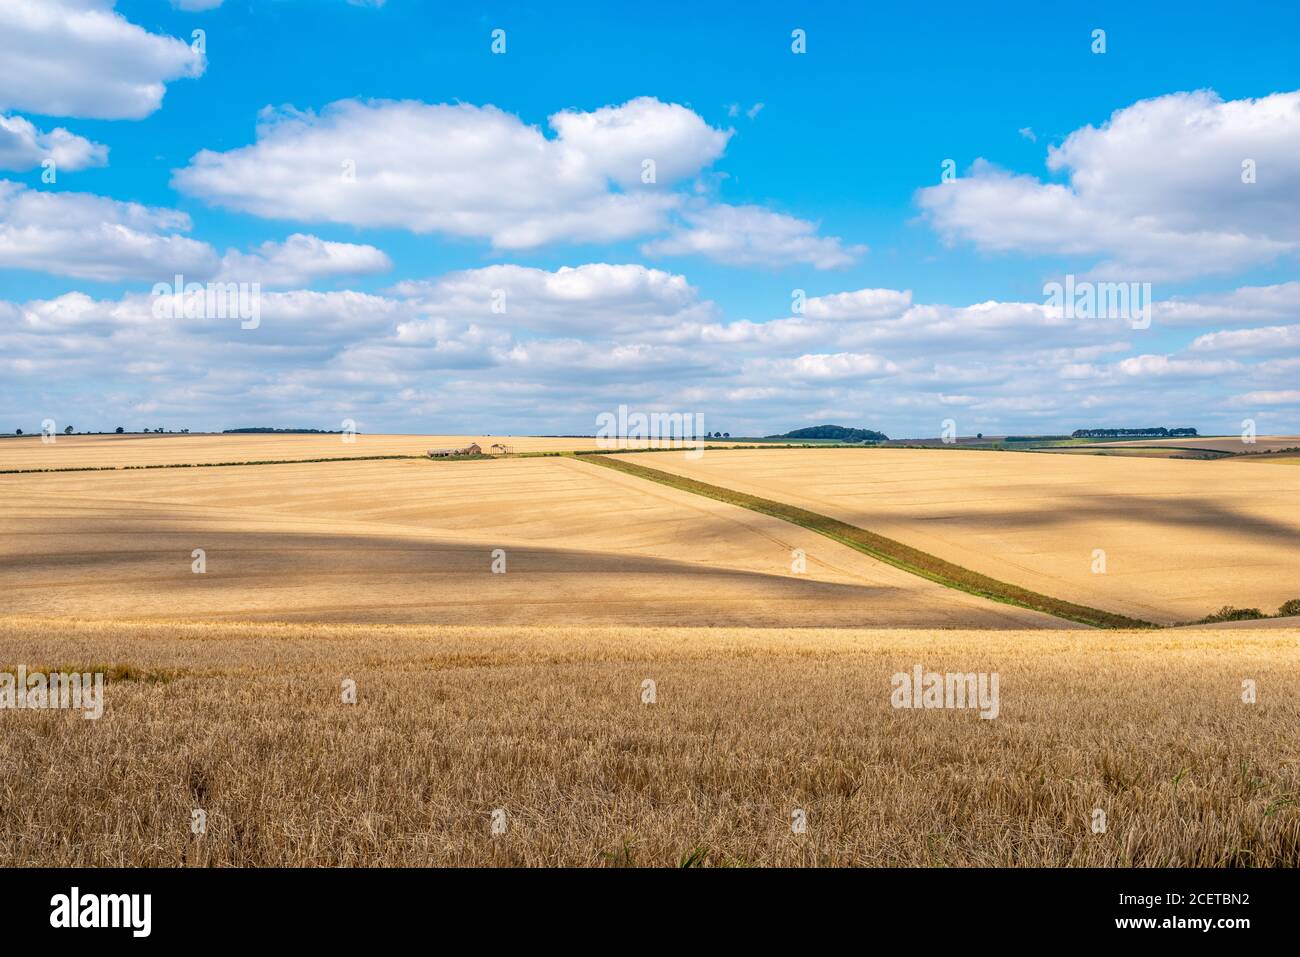 Colorido paisaje vista sobre colinas onduladas y campos de trigo en un día soleado con nubes blancas. Foto de stock